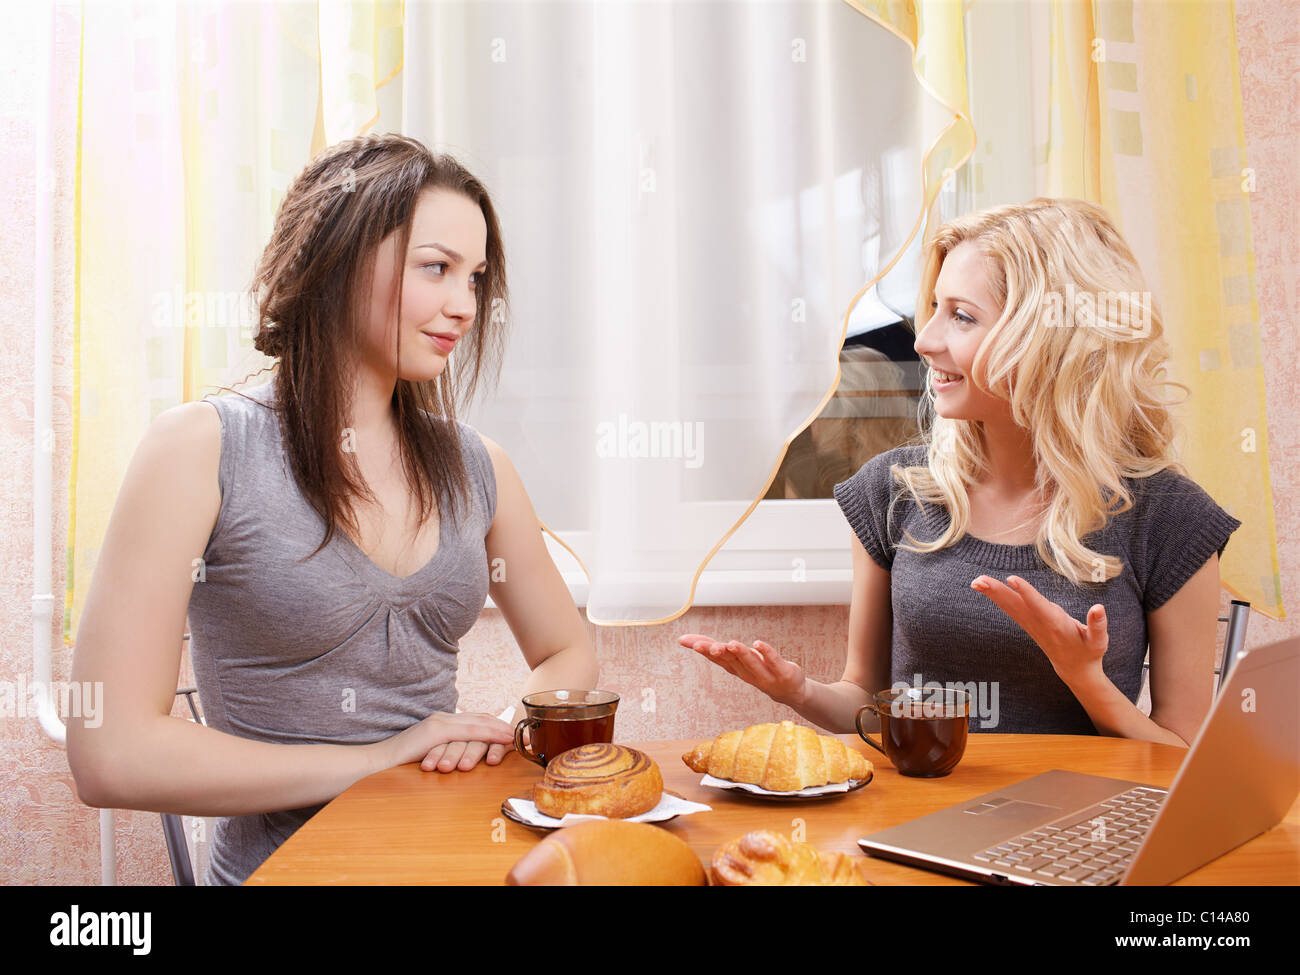 Возбуждает подруга жены. Две девушки за столом. Подруги за столом. Чаепитие с подругами. Две женщины сидят за столом.